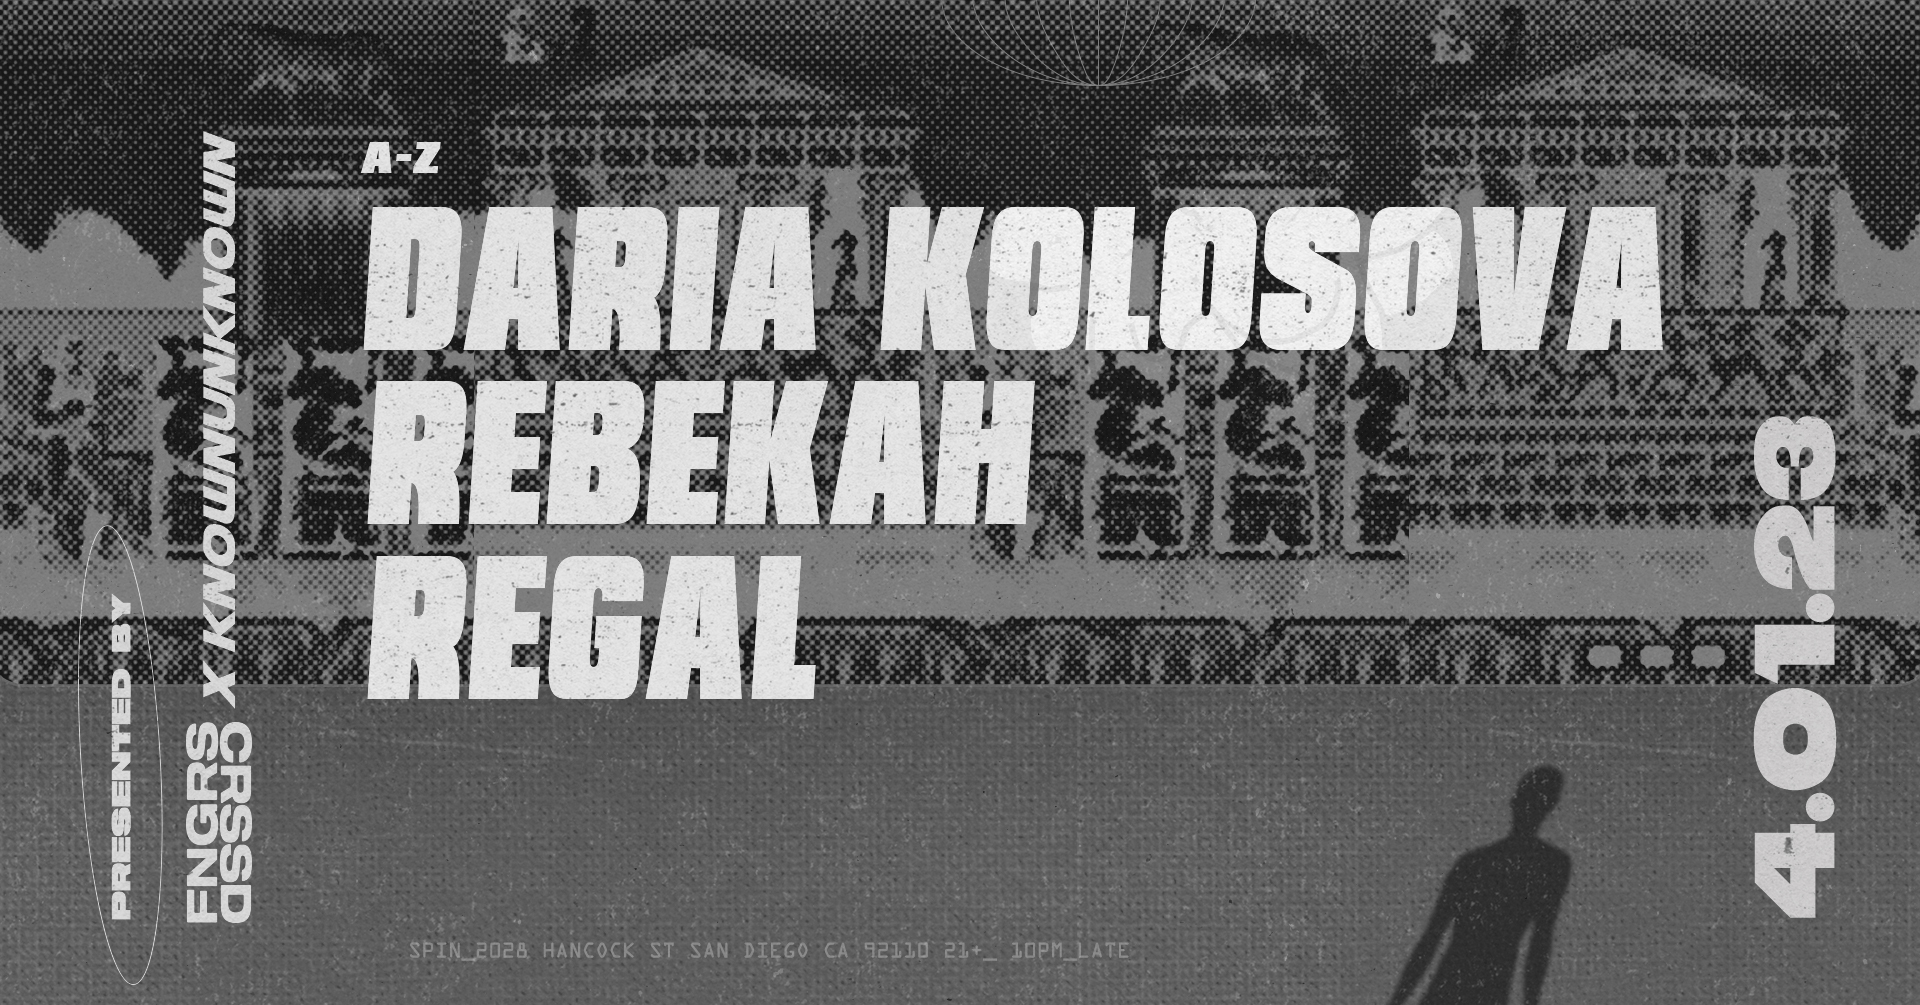 Rebekah + Daria Kolosova + Regal